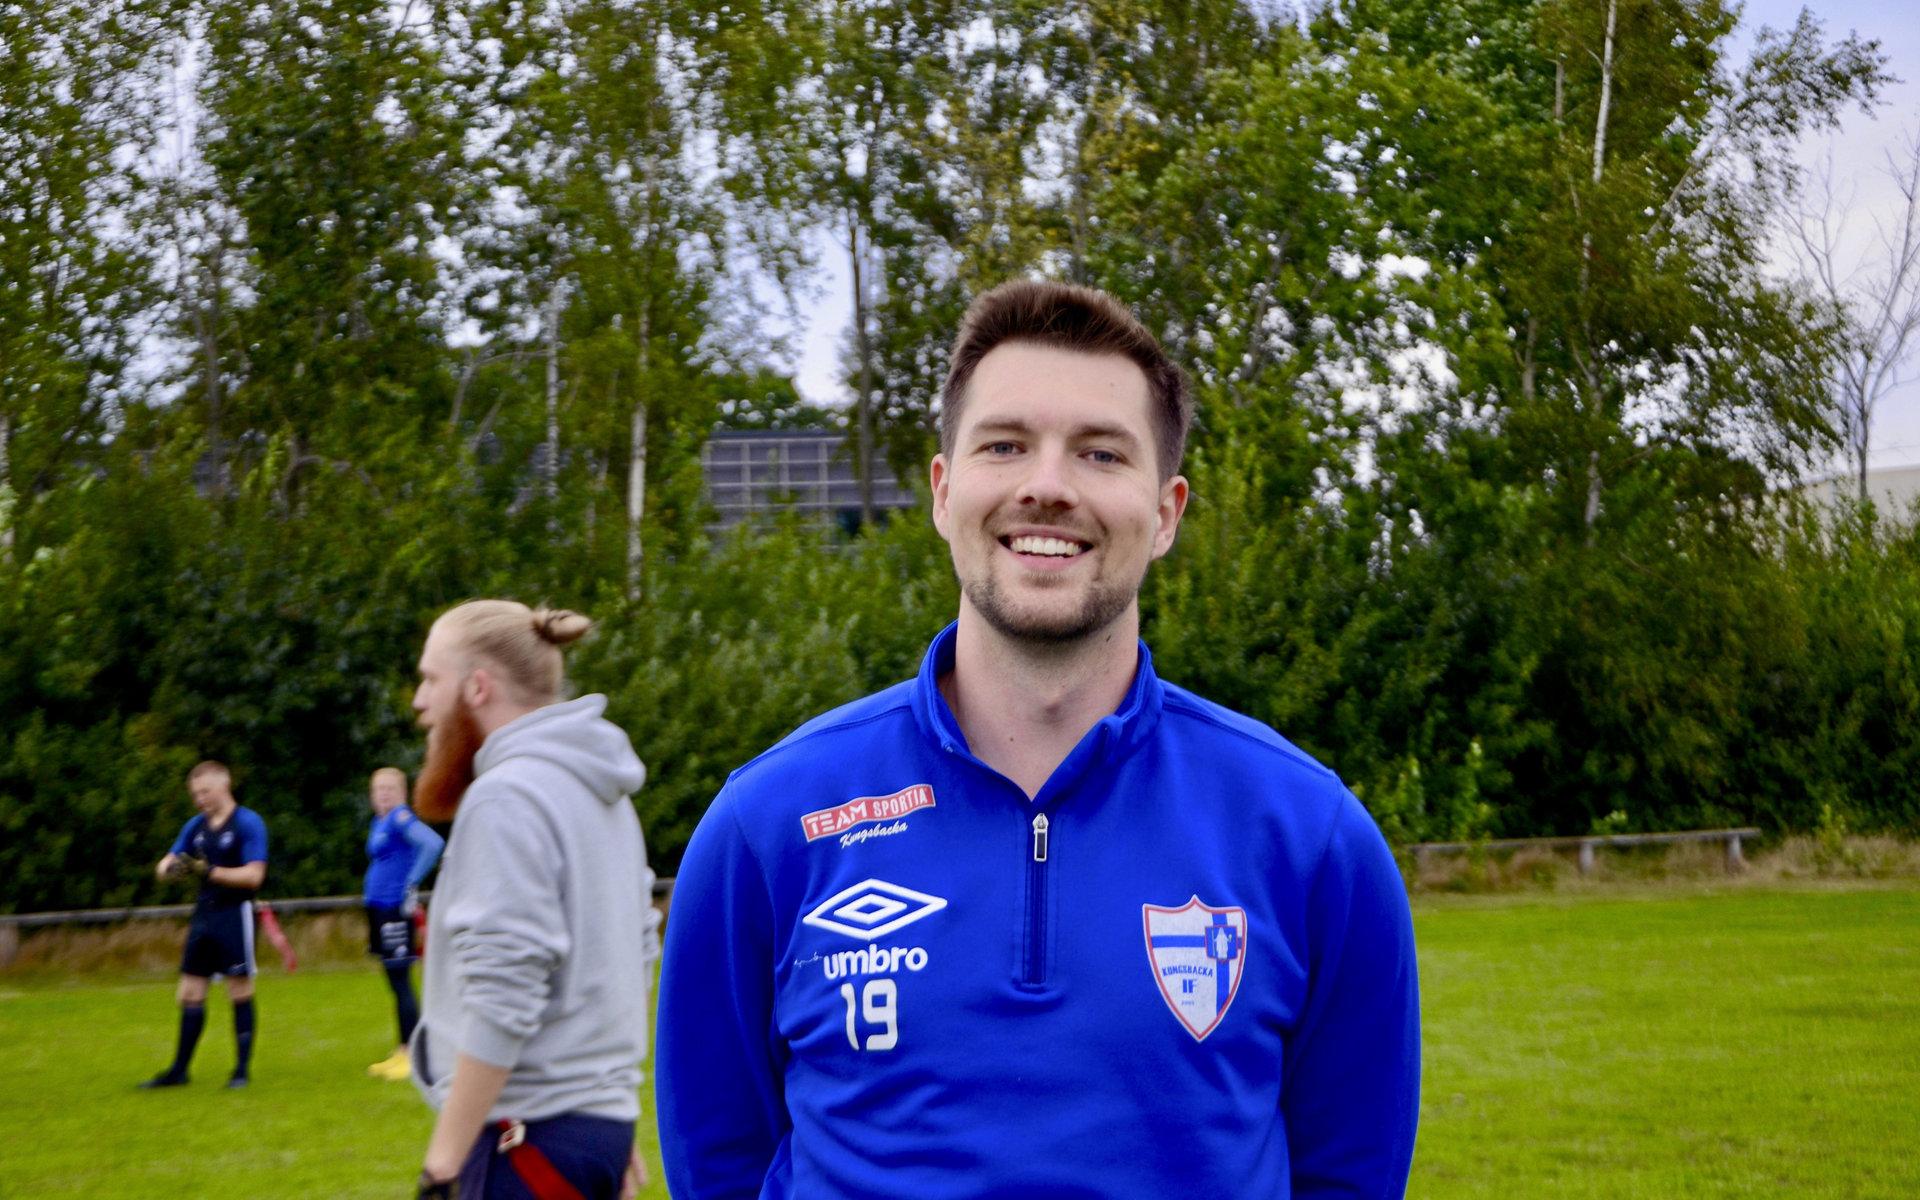 Christoffer Lindström startade Falkenberg Phoenix, Falkenbergs första flaggfotbollsförening. 